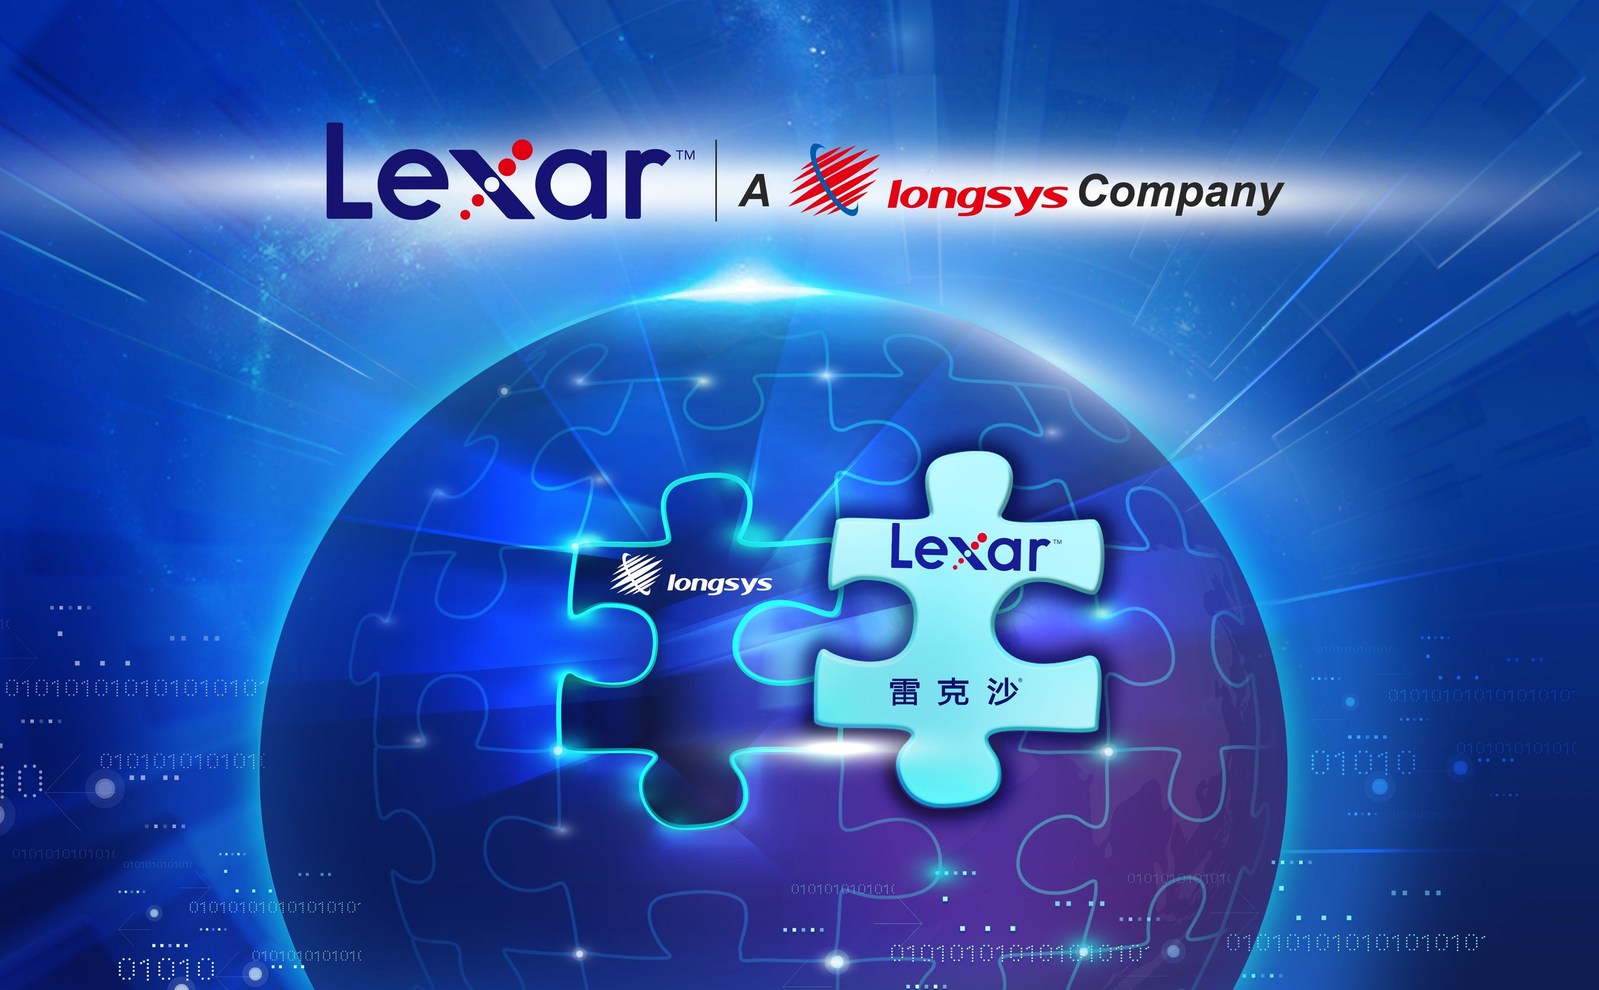 Immagine pubblicata in relazione al seguente contenuto: Longsys rileva il brand Lexar da Micron e promette nuovi prodotti e supporto | Nome immagine: news26961_Longsys_Acquires_Lexar_Brand_1.jpg